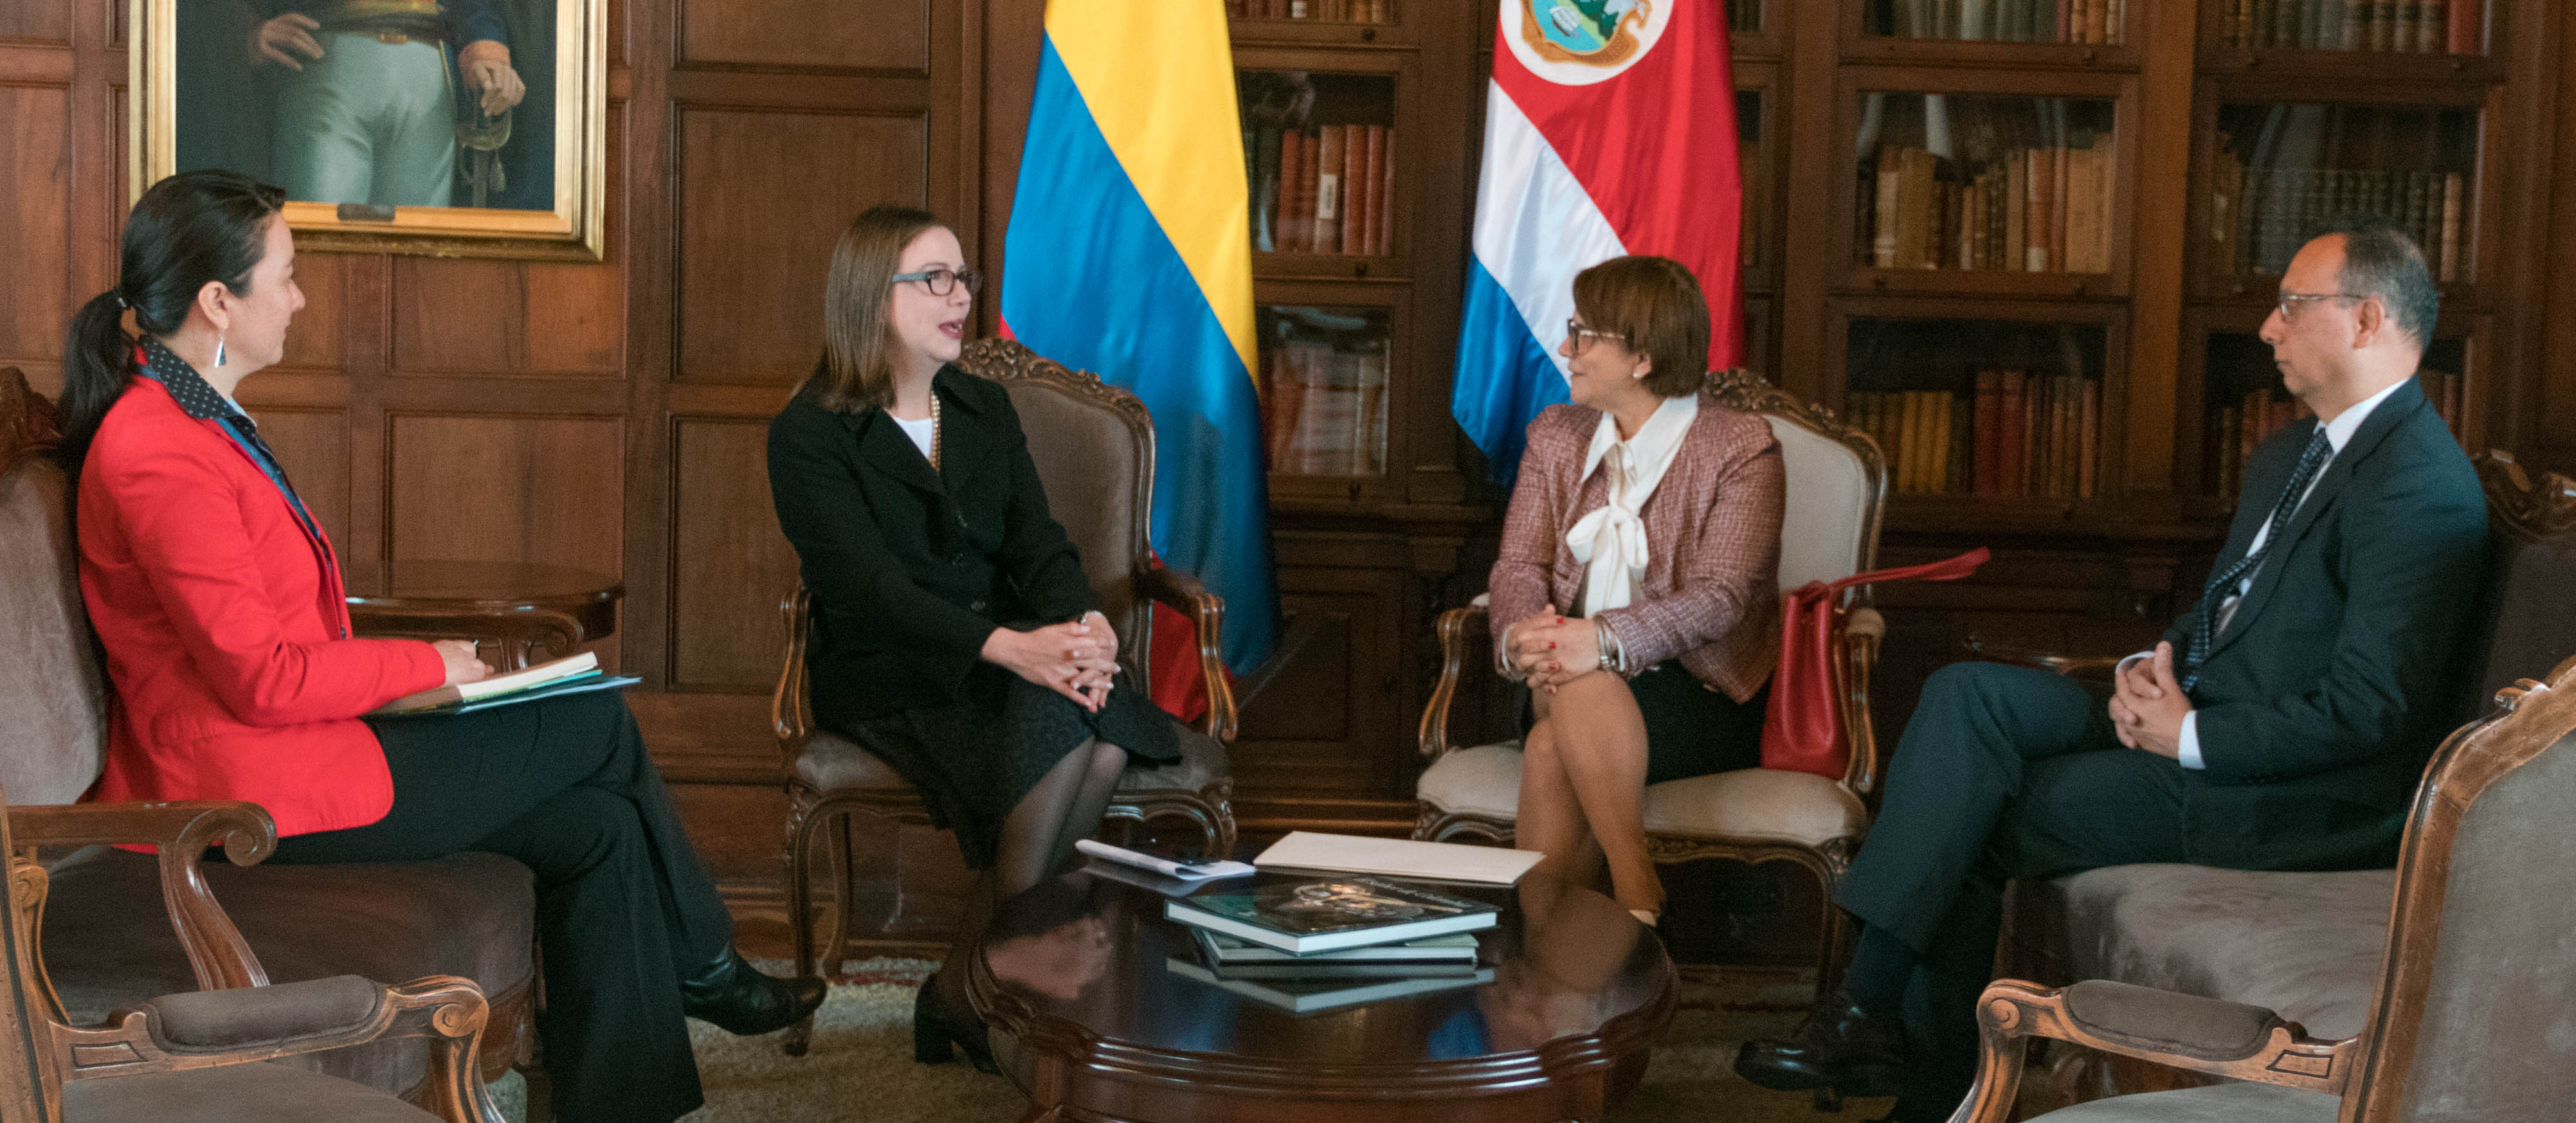 La Embajadora de Costa Rica en Colombia presentó copias de cartas credenciales a la Canciller encargada